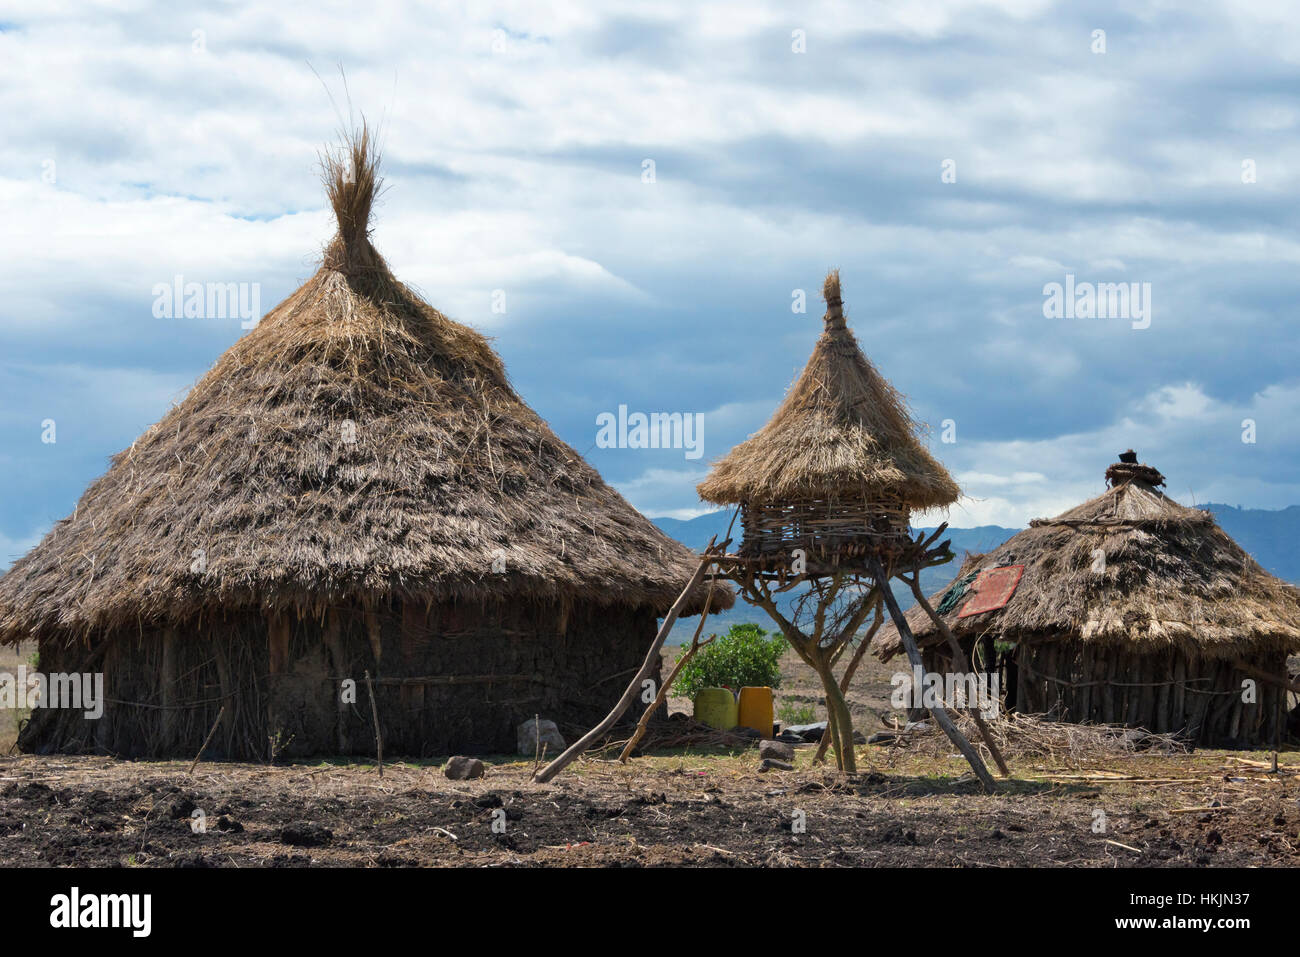 Casas tradicionales con techo de paja y jaula de pollo en la montaña, Konso, Etiopía Foto de stock